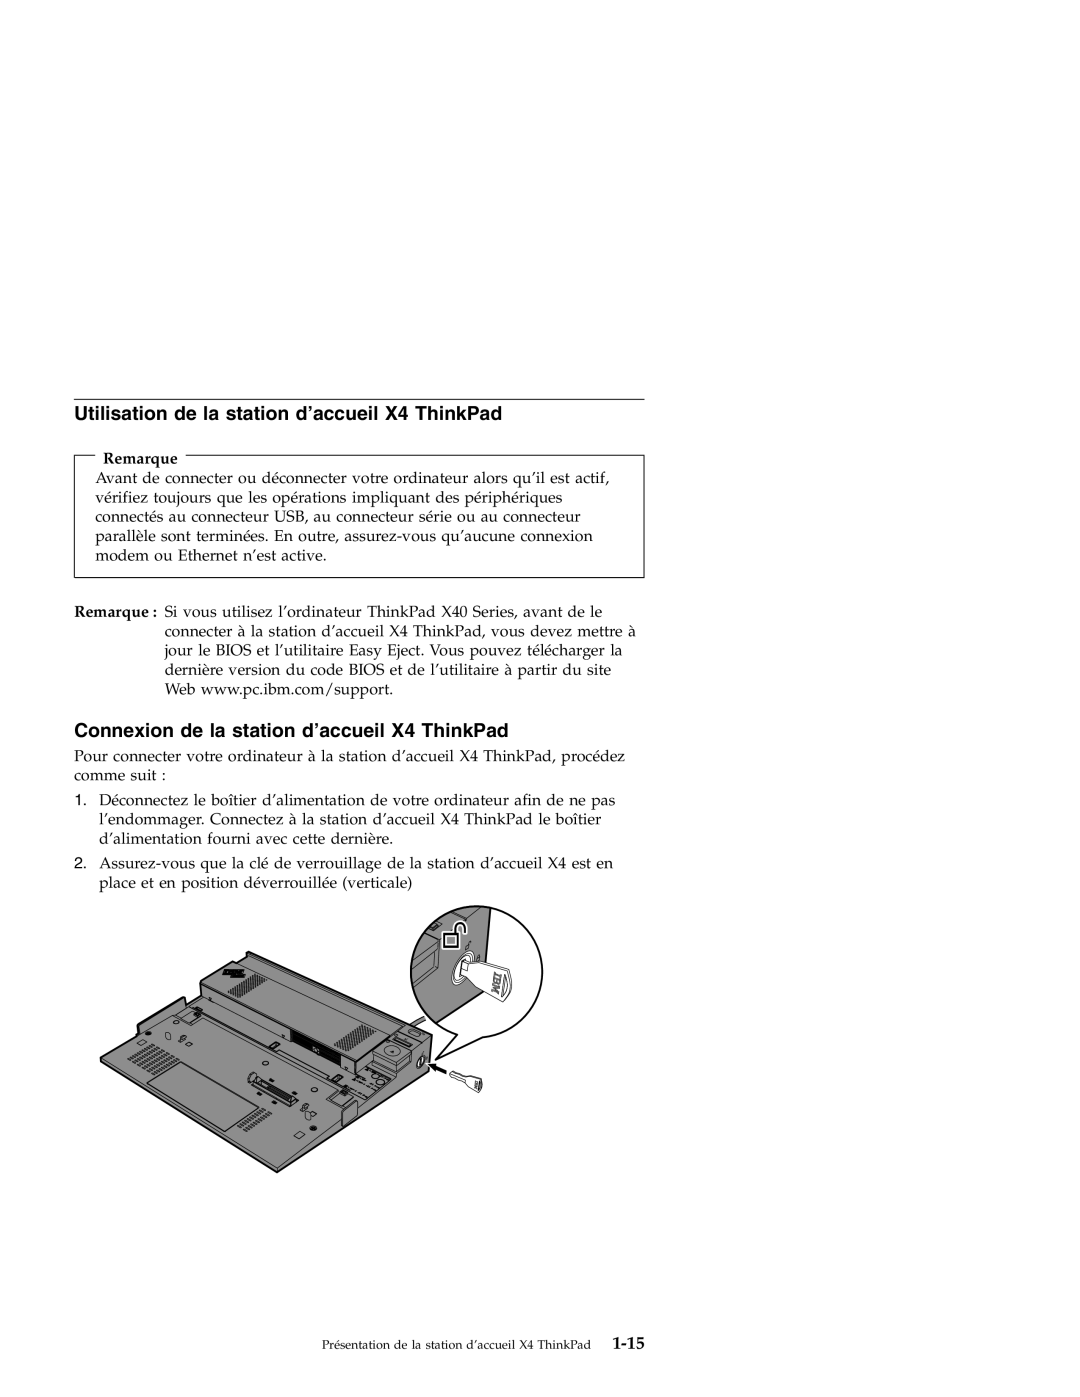 IBM manual Utilisation de la station d’accueil X4 ThinkPad, Connexion de la station d’accueil X4 ThinkPad, Remarque 